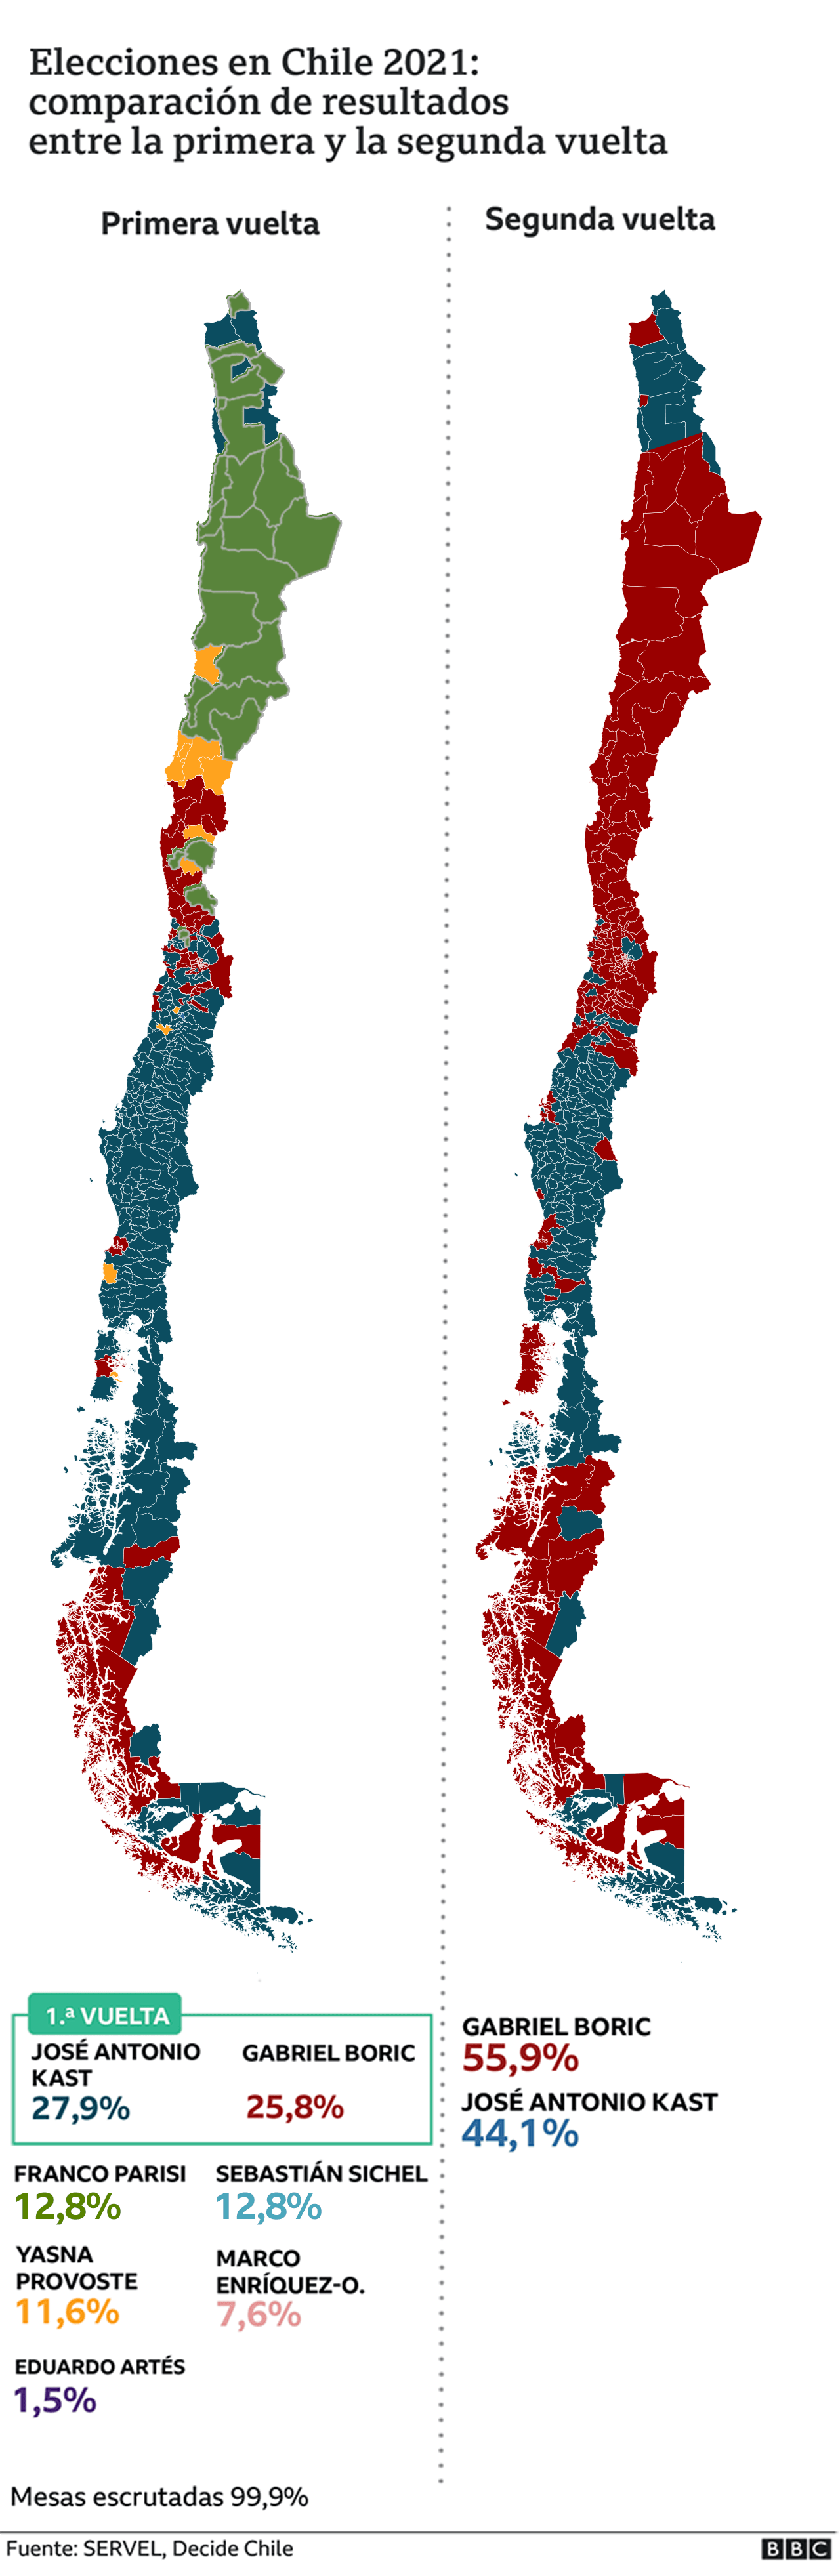 Mapa comparación resultados primera y segunda vuelta elecciones presidenciales Chile 2021.